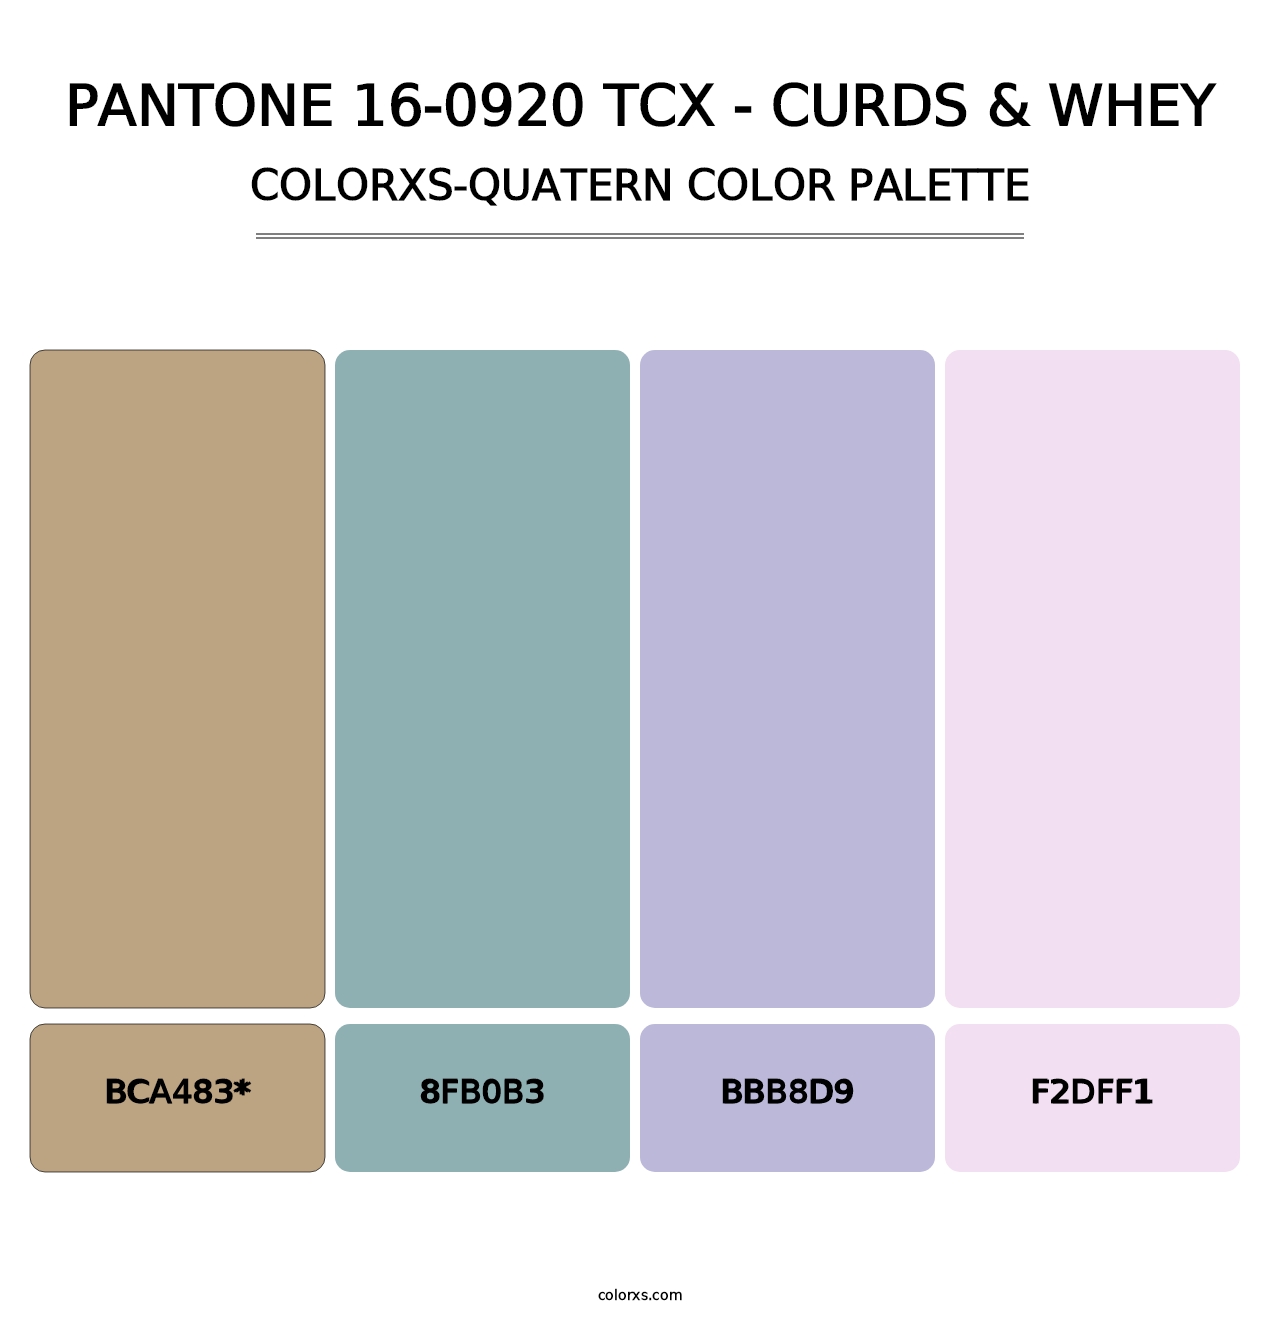 PANTONE 16-0920 TCX - Curds & Whey - Colorxs Quatern Palette